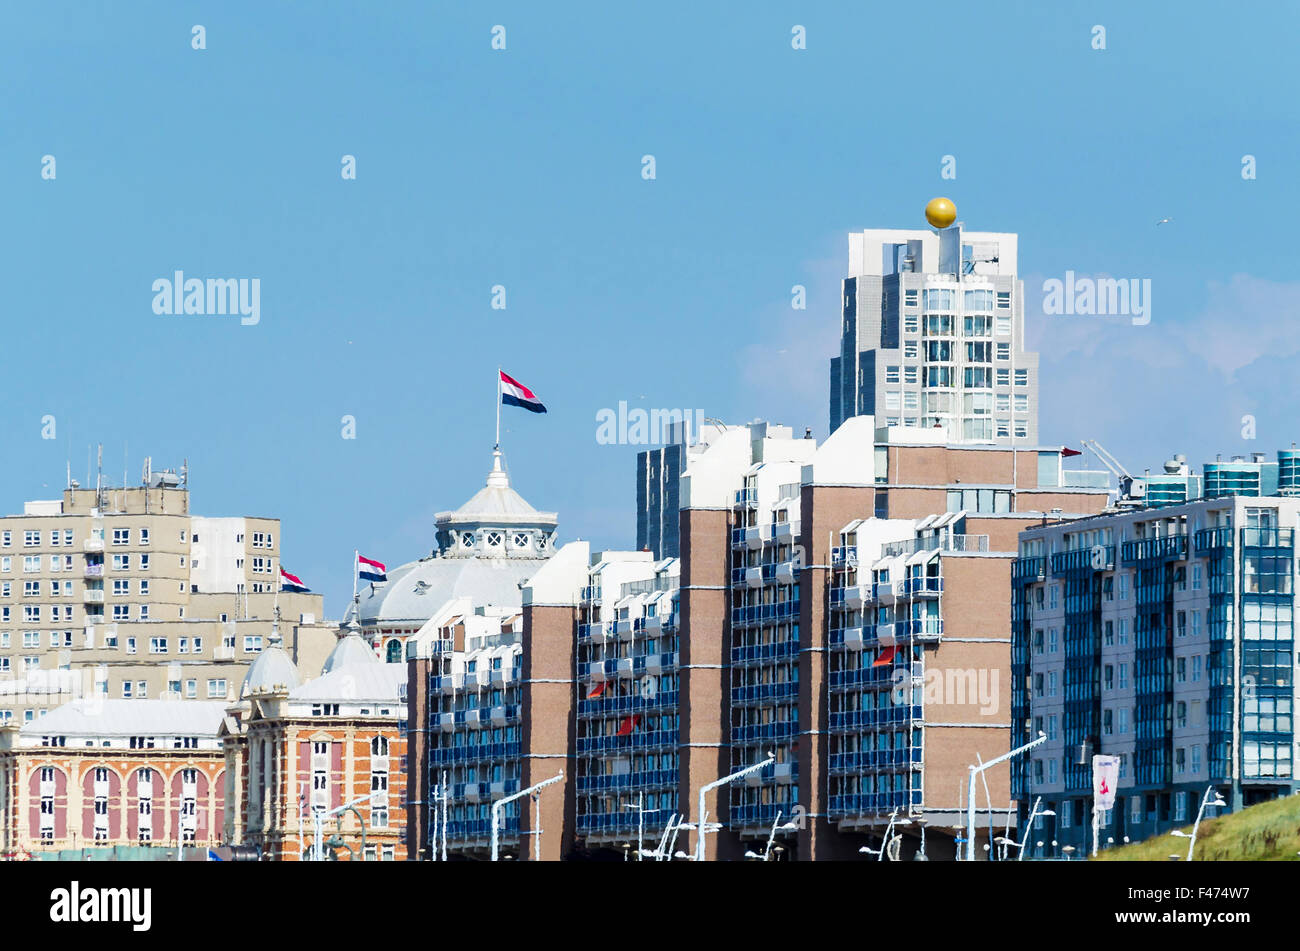 Skyline of Scheveningen Stock Photo